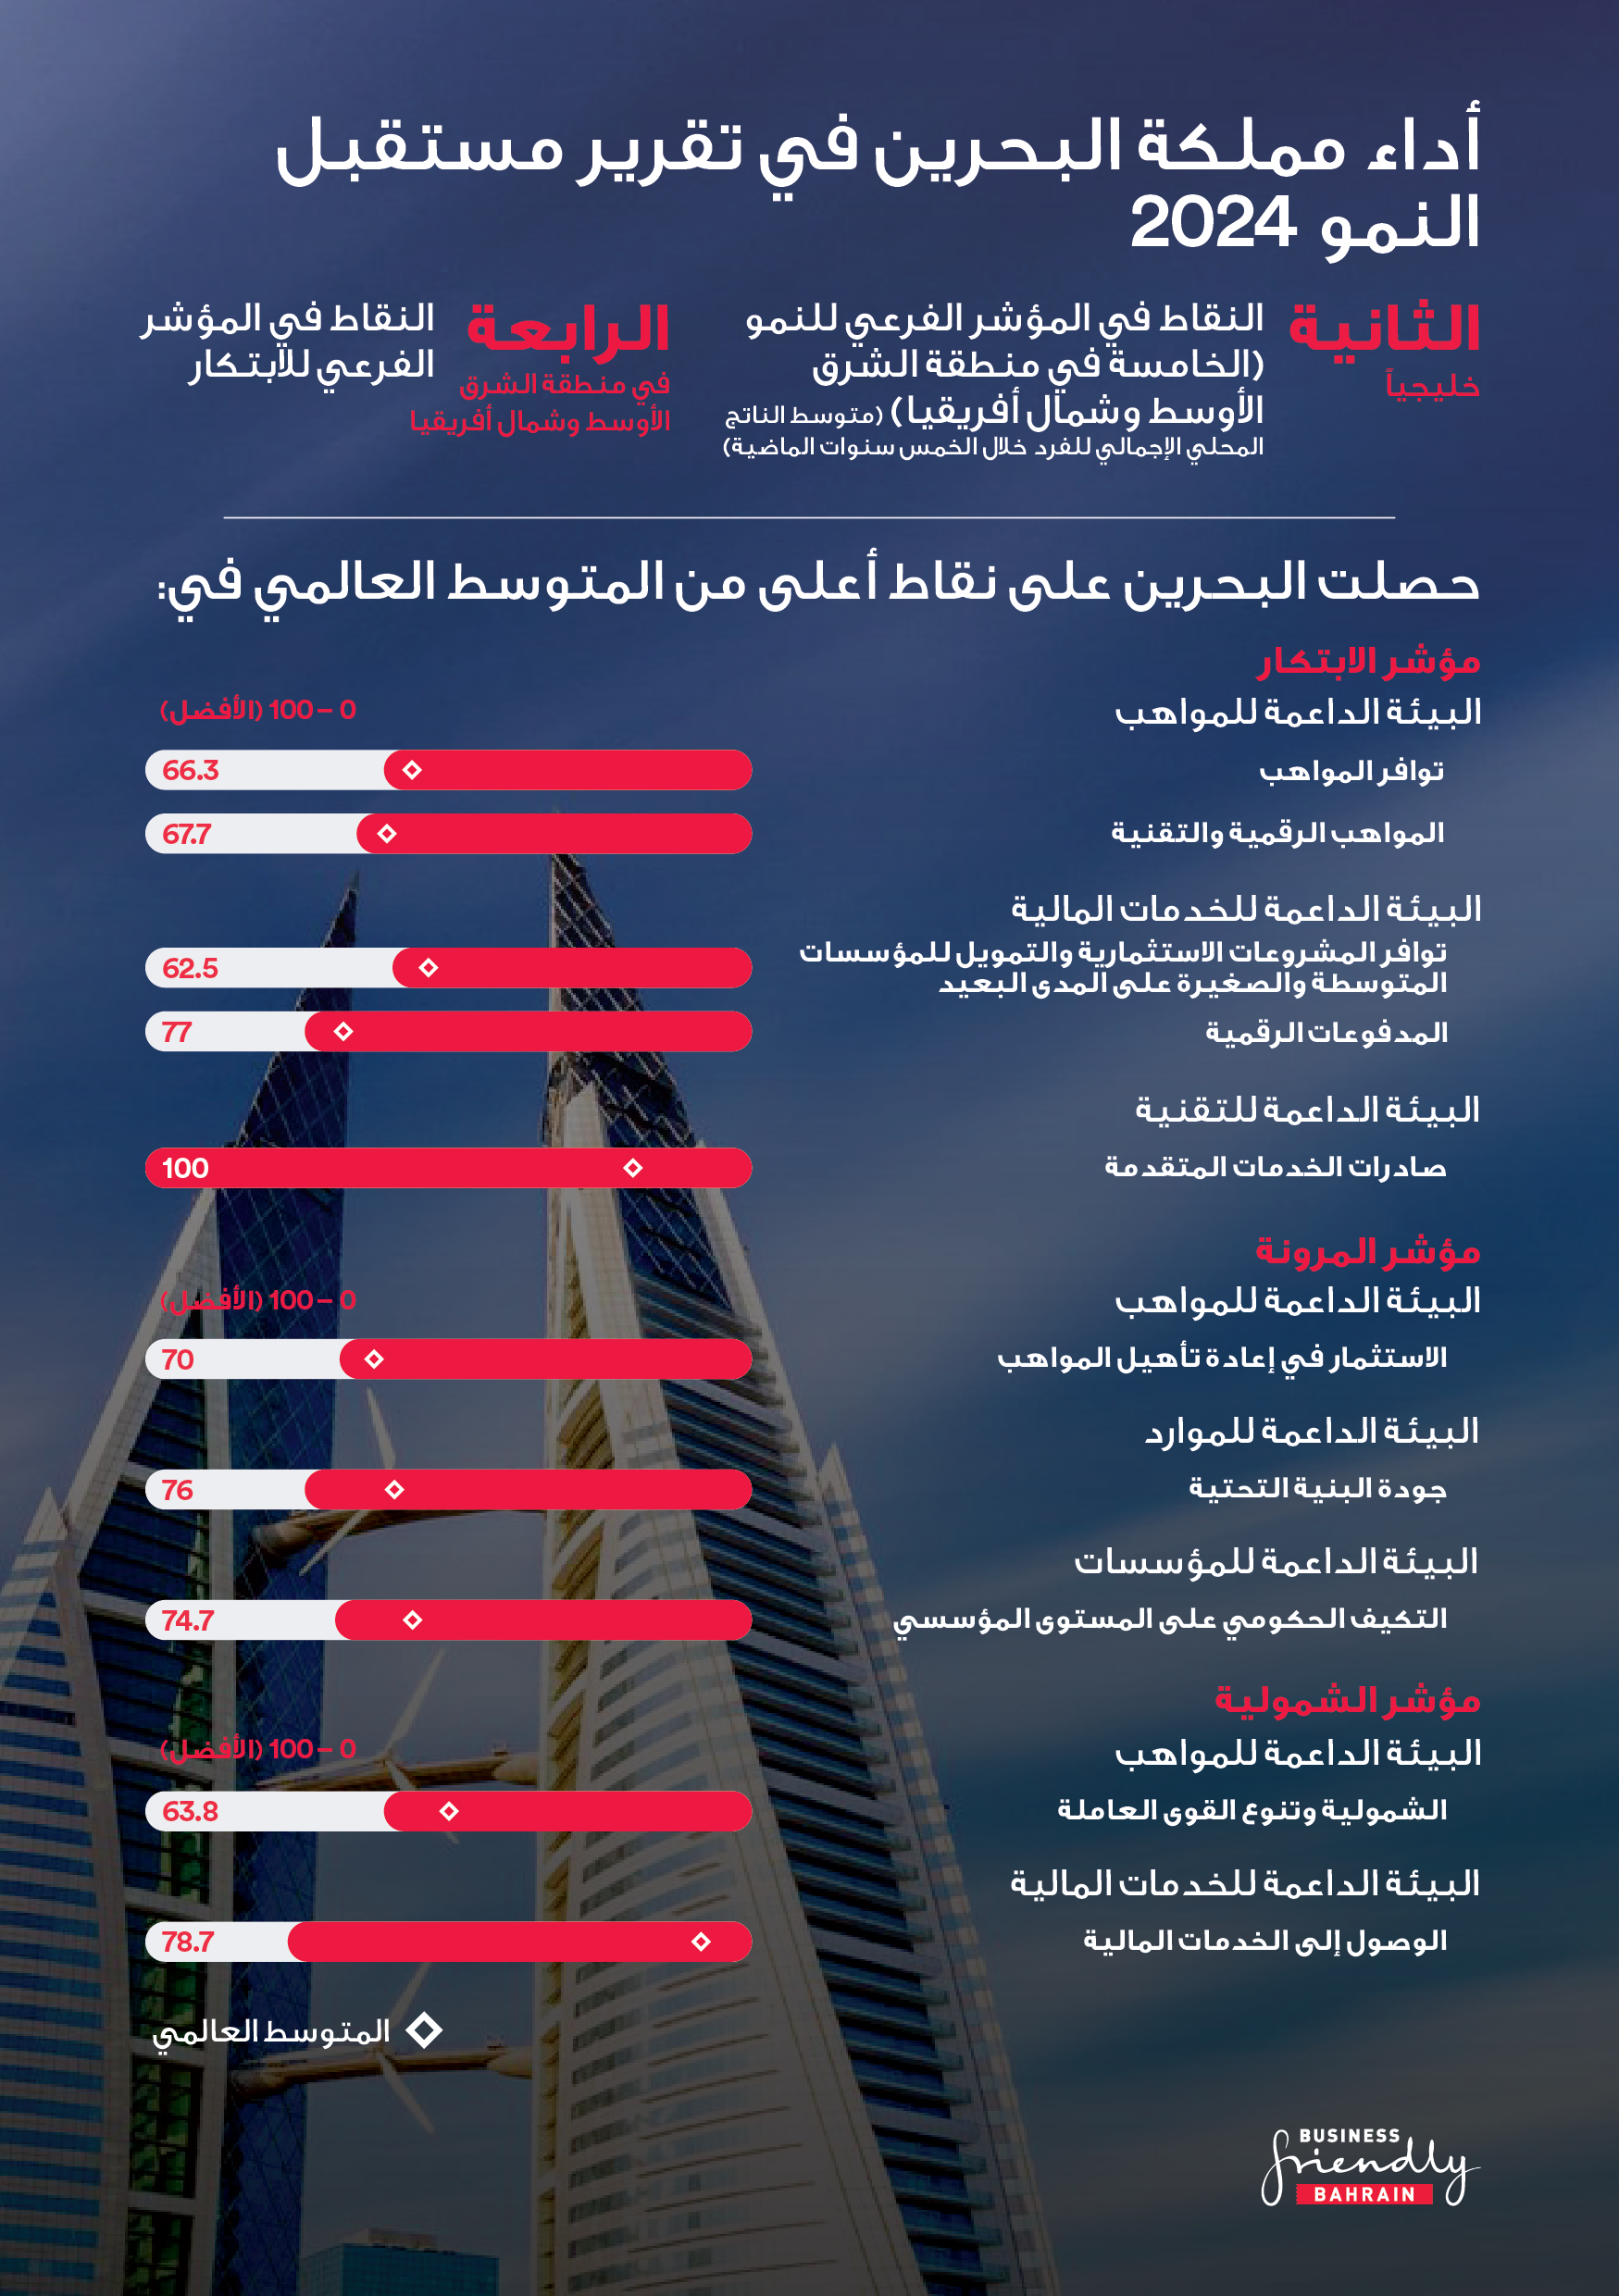 وفقاً لتقرير المنتدى الاقتصادي العالمي مستقبل النمو 2024 البحرين تتجاوز المتوسط العالمي في مؤشرات المواهب والابتكار